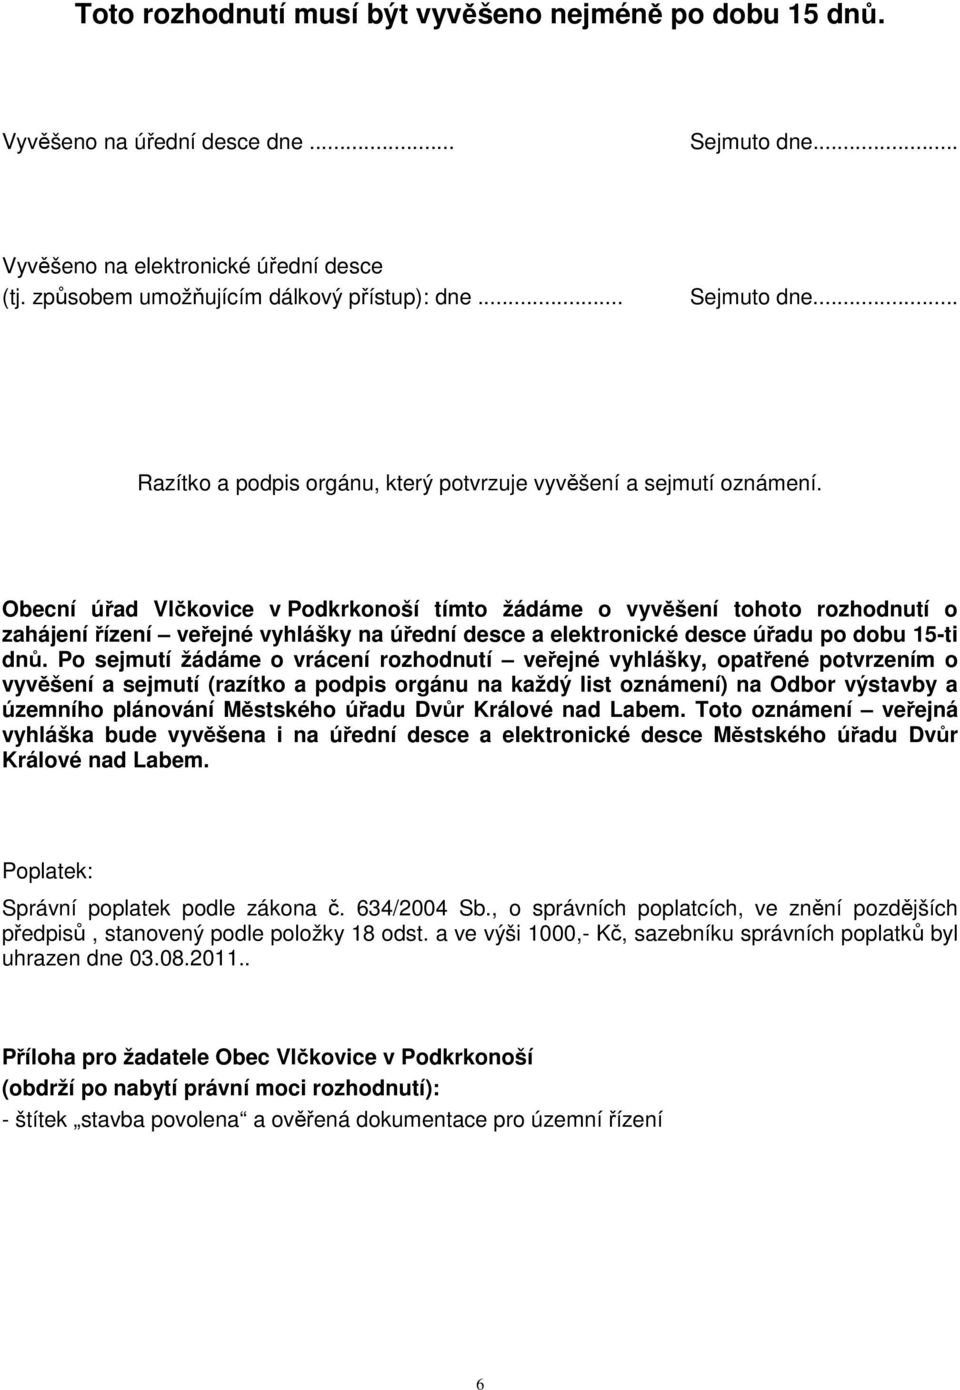 Obecní úřad Vlčkovice v Podkrkonoší tímto žádáme o vyvěšení tohoto rozhodnutí o zahájení řízení veřejné vyhlášky na úřední desce a elektronické desce úřadu po dobu 15-ti dnů.